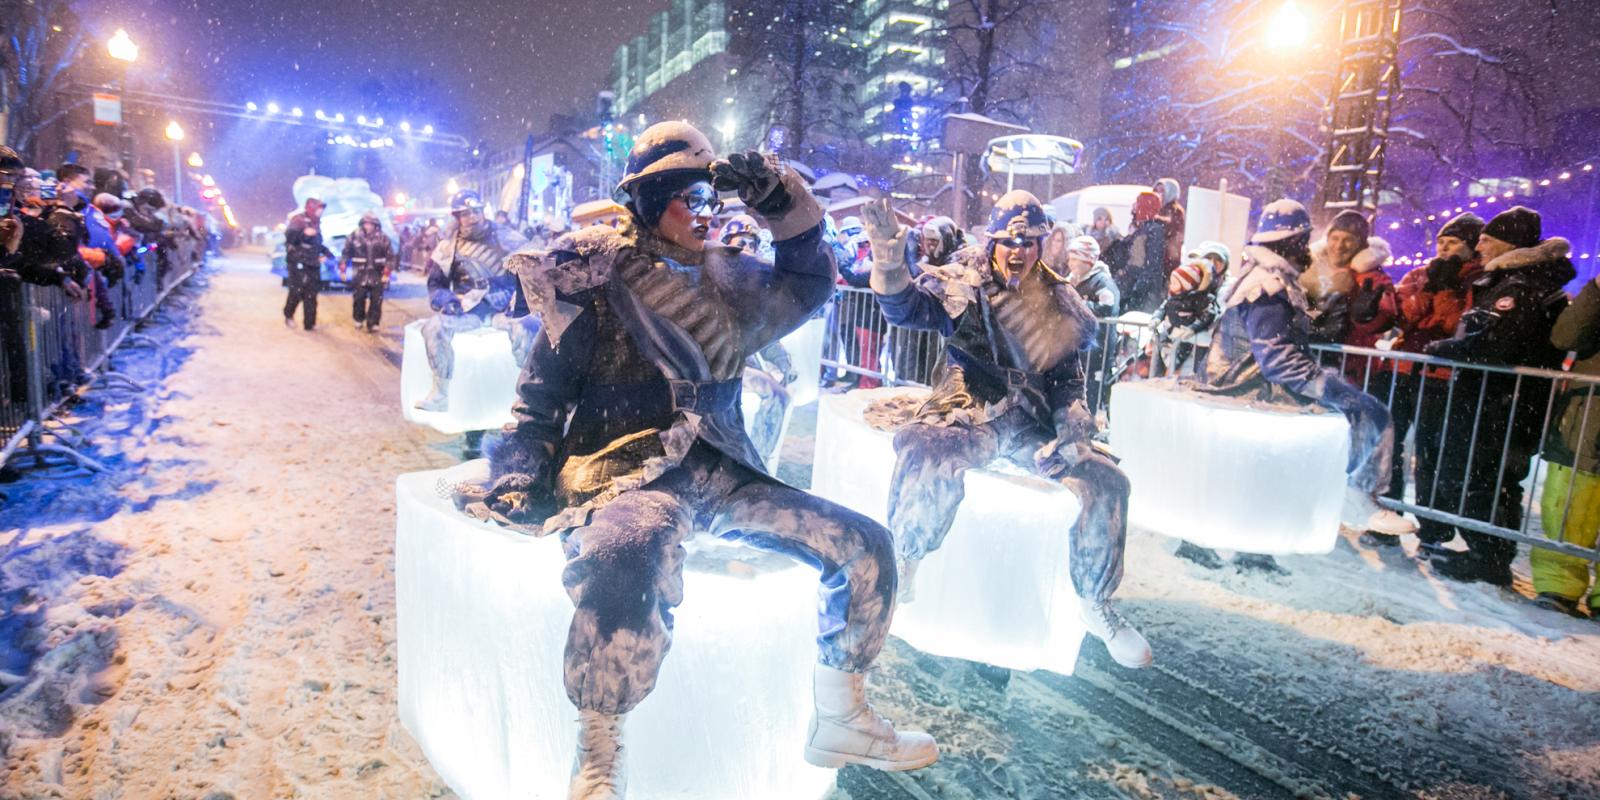 Québec Winter Carnival Night Parades